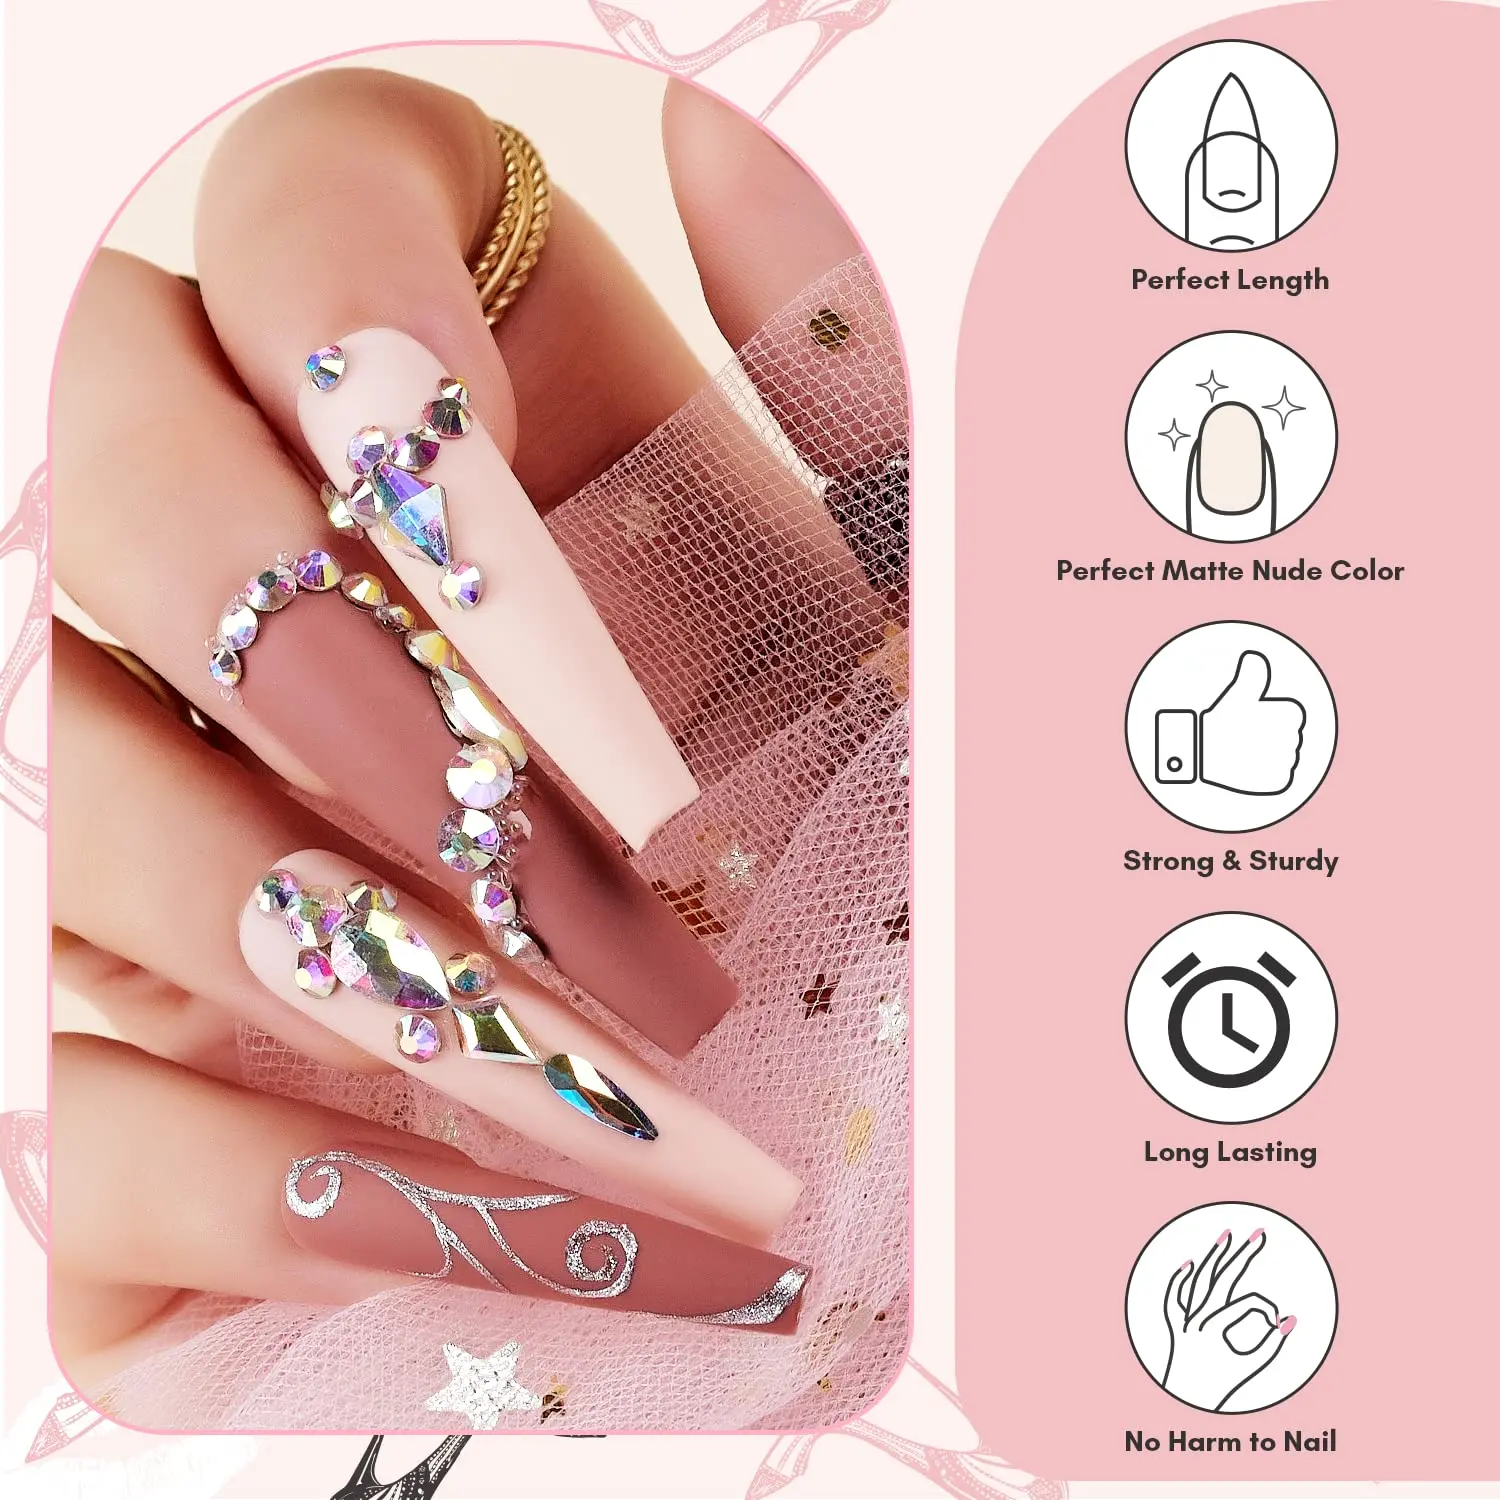 Makartt-Kit de uñas postizas francesas, uñas postizas XXL largas con pegamento, puntas acrílicas, Nude y rosa, 12 tamaños, 24 piezas